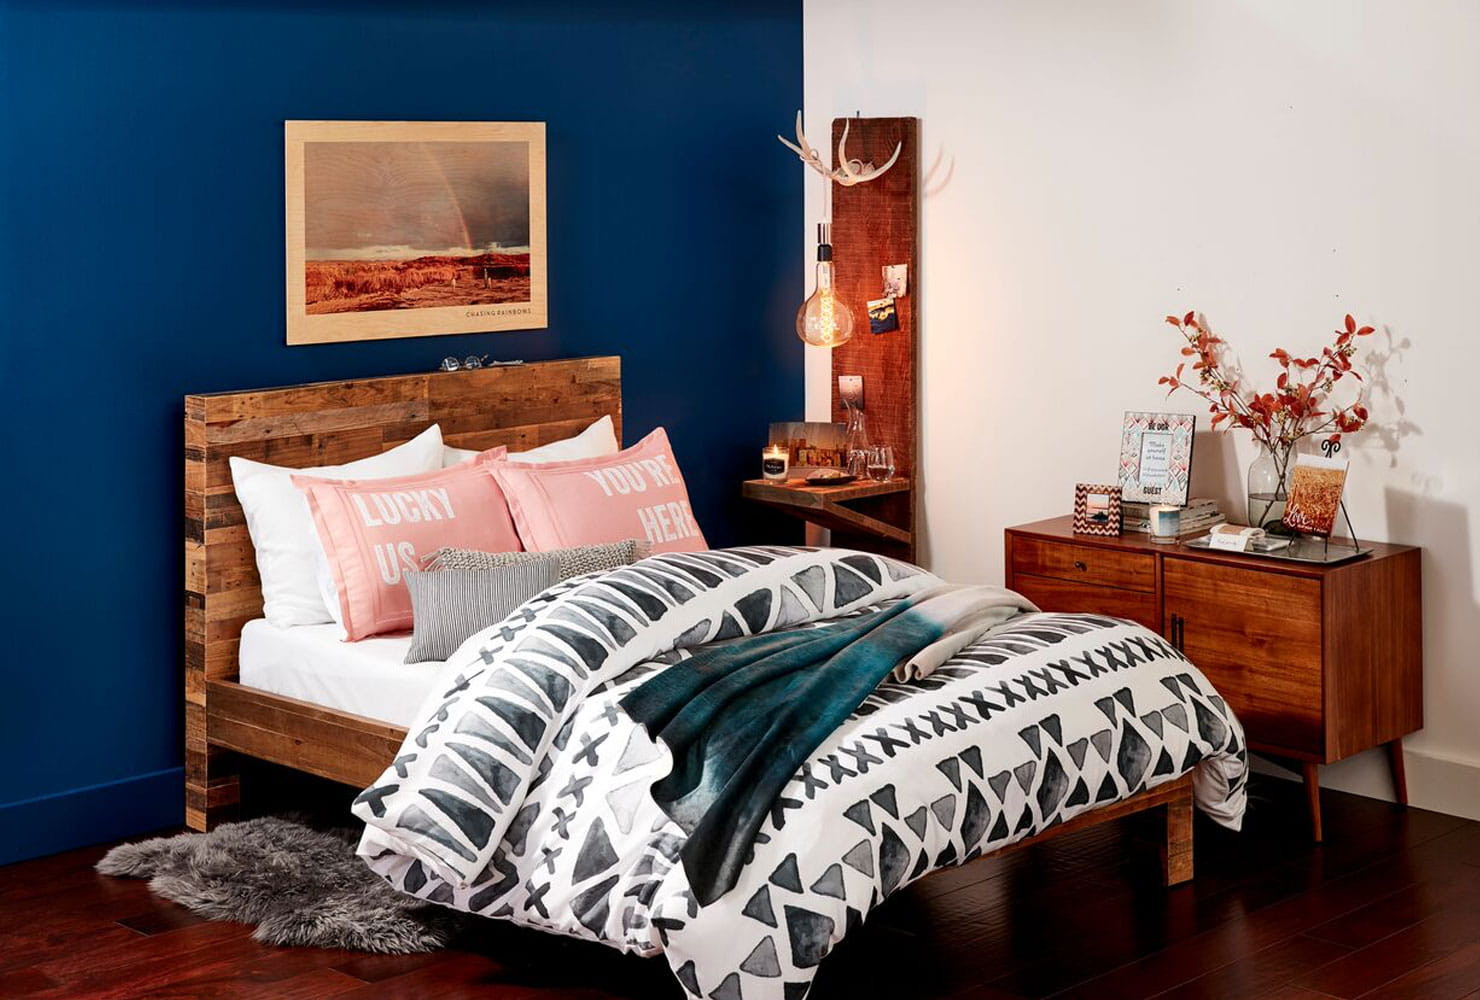 Bedroom DIY Decor
 24 DIY Bedroom Decor Ideas To Inspire You With Printables